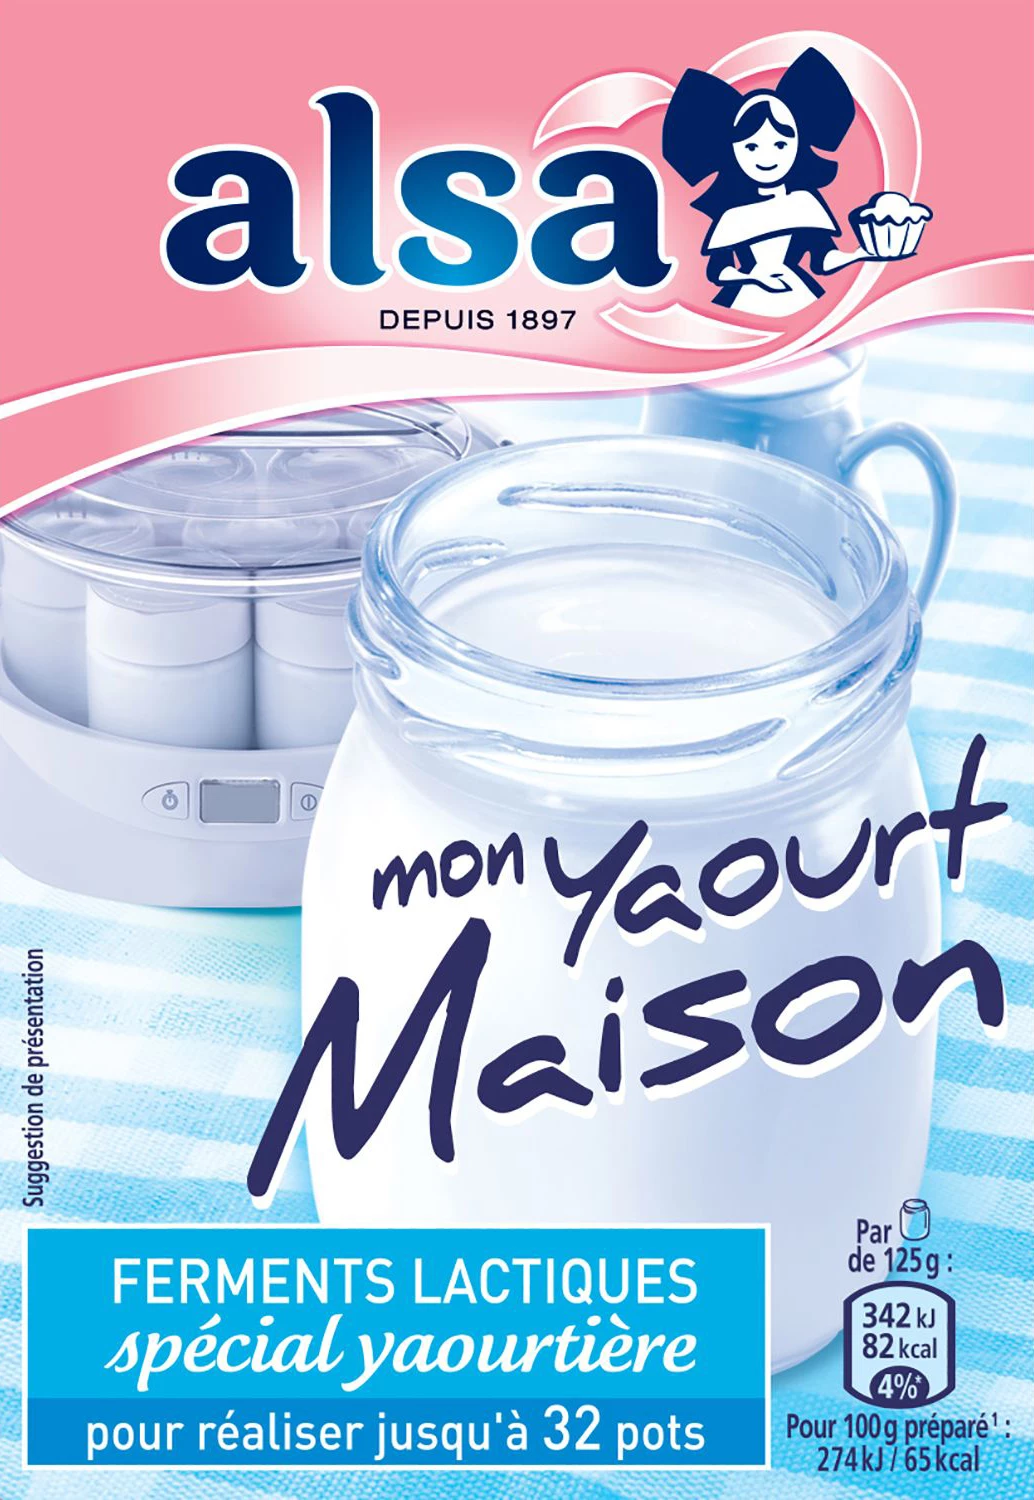 Lactic ferments special for yogurt makers - ALSA